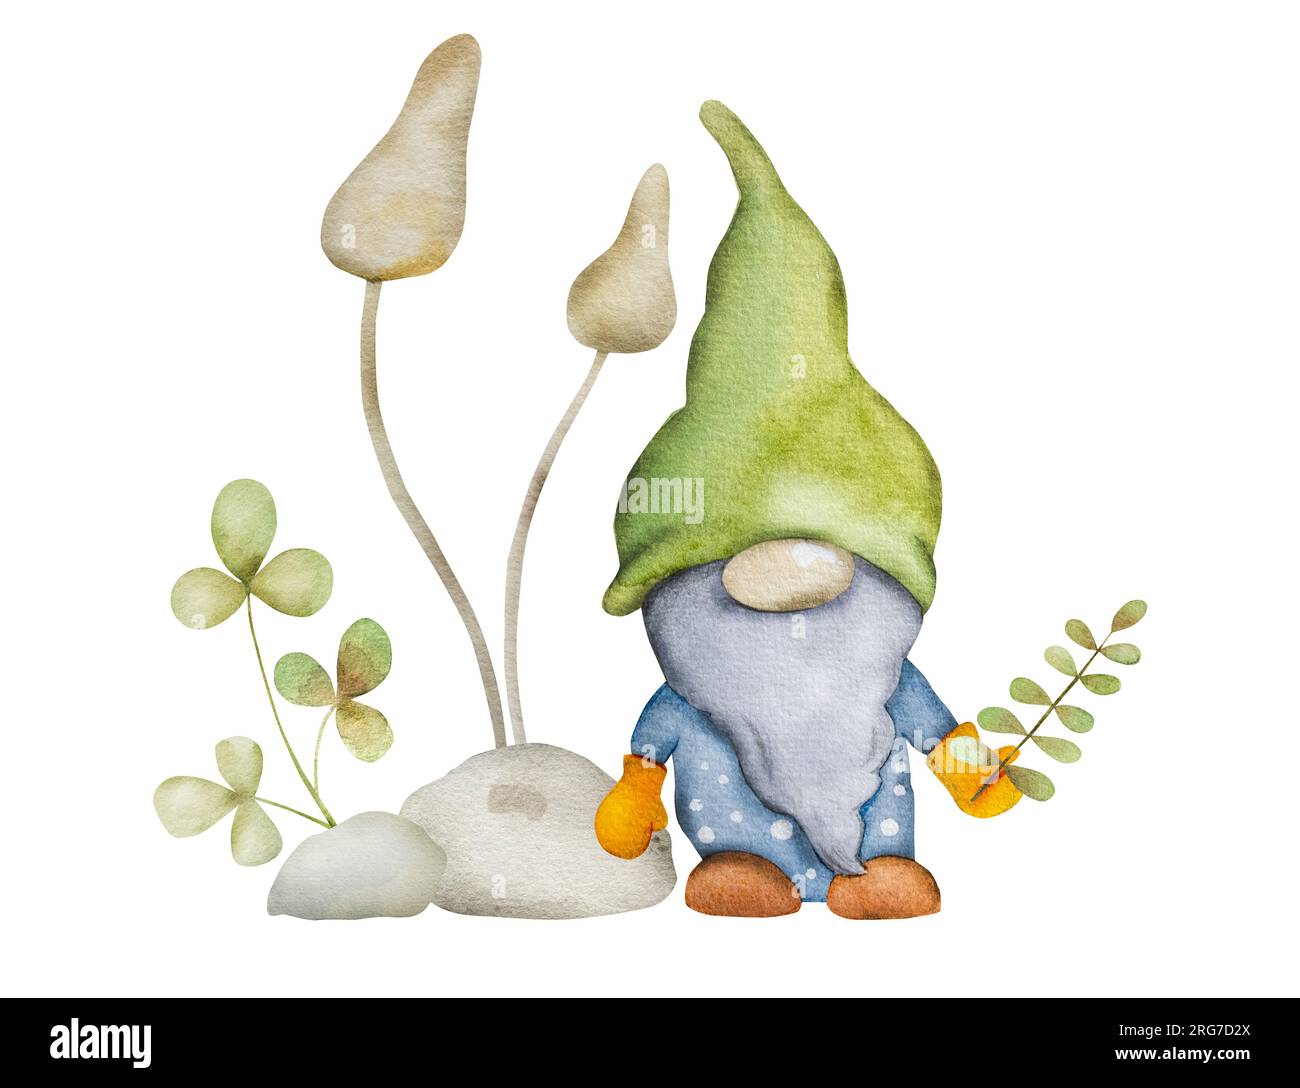 Nana forestale con funghi in pittura acquerello giardino. Personaggio fiabesco gnome con disegno agarico aquarelle per decorazione da cartolina Foto Stock